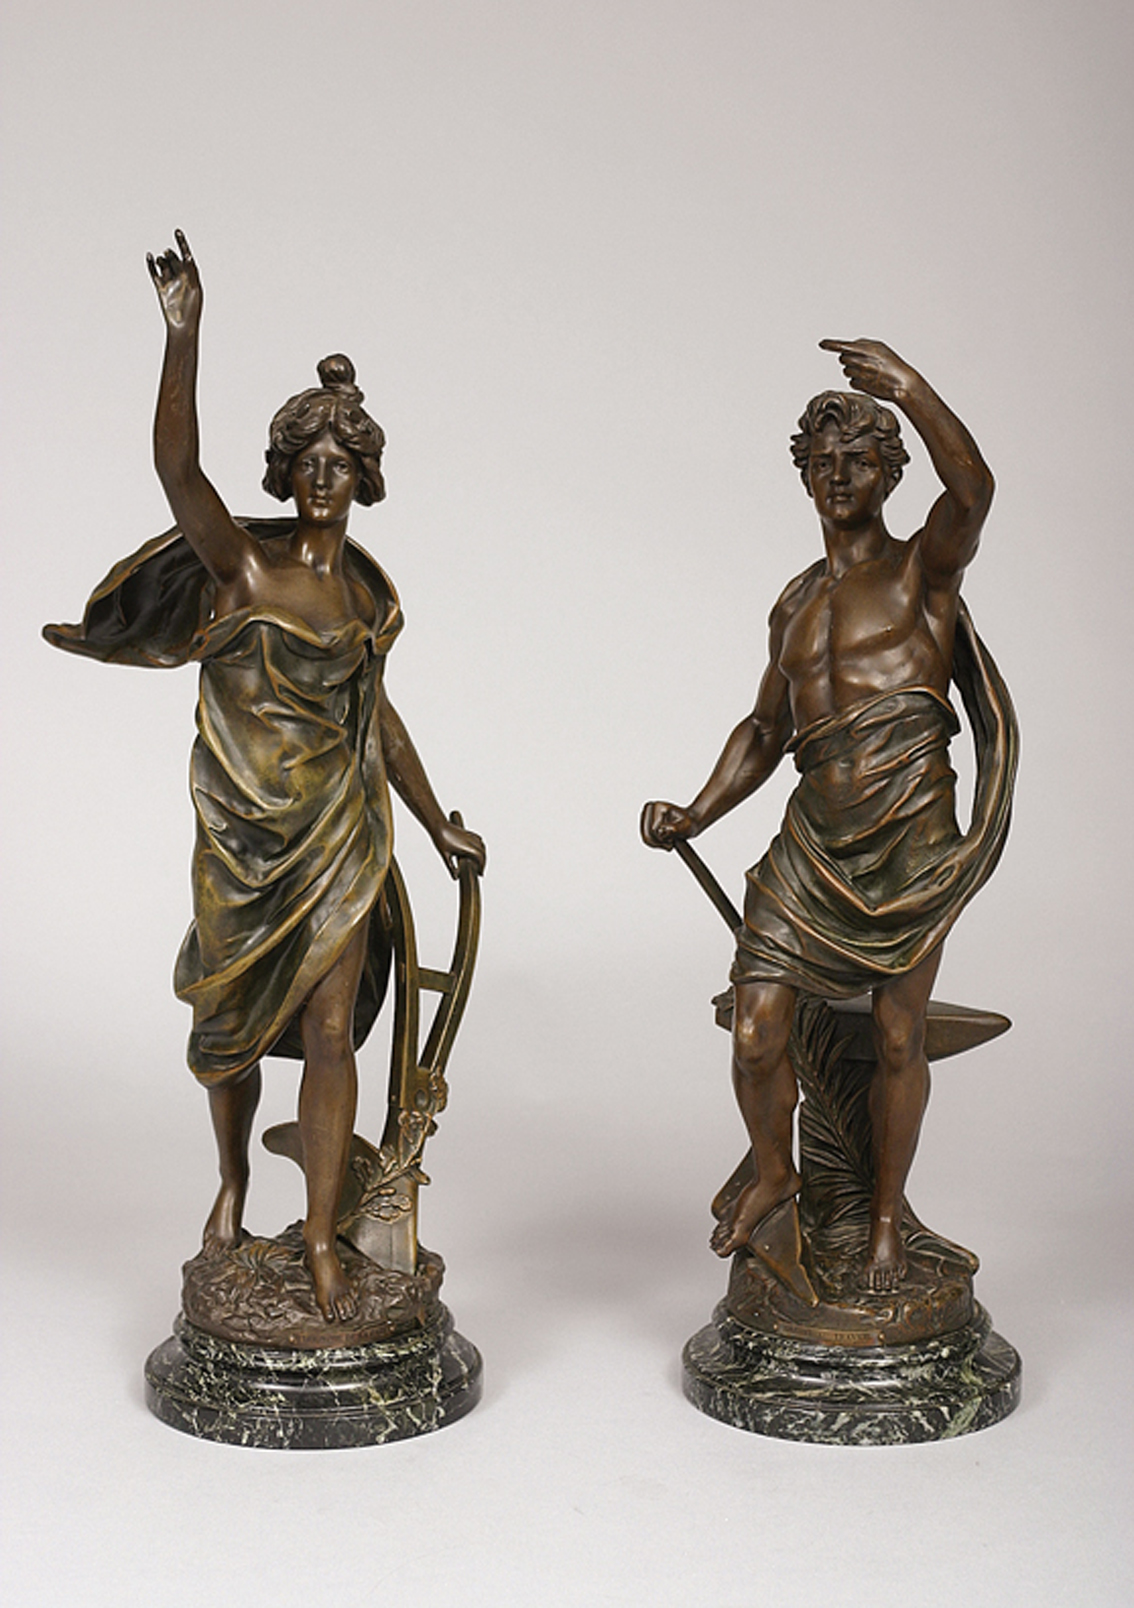 A pair of french figures 'Glorie au Travail' and 'Triomphe de la Paix'